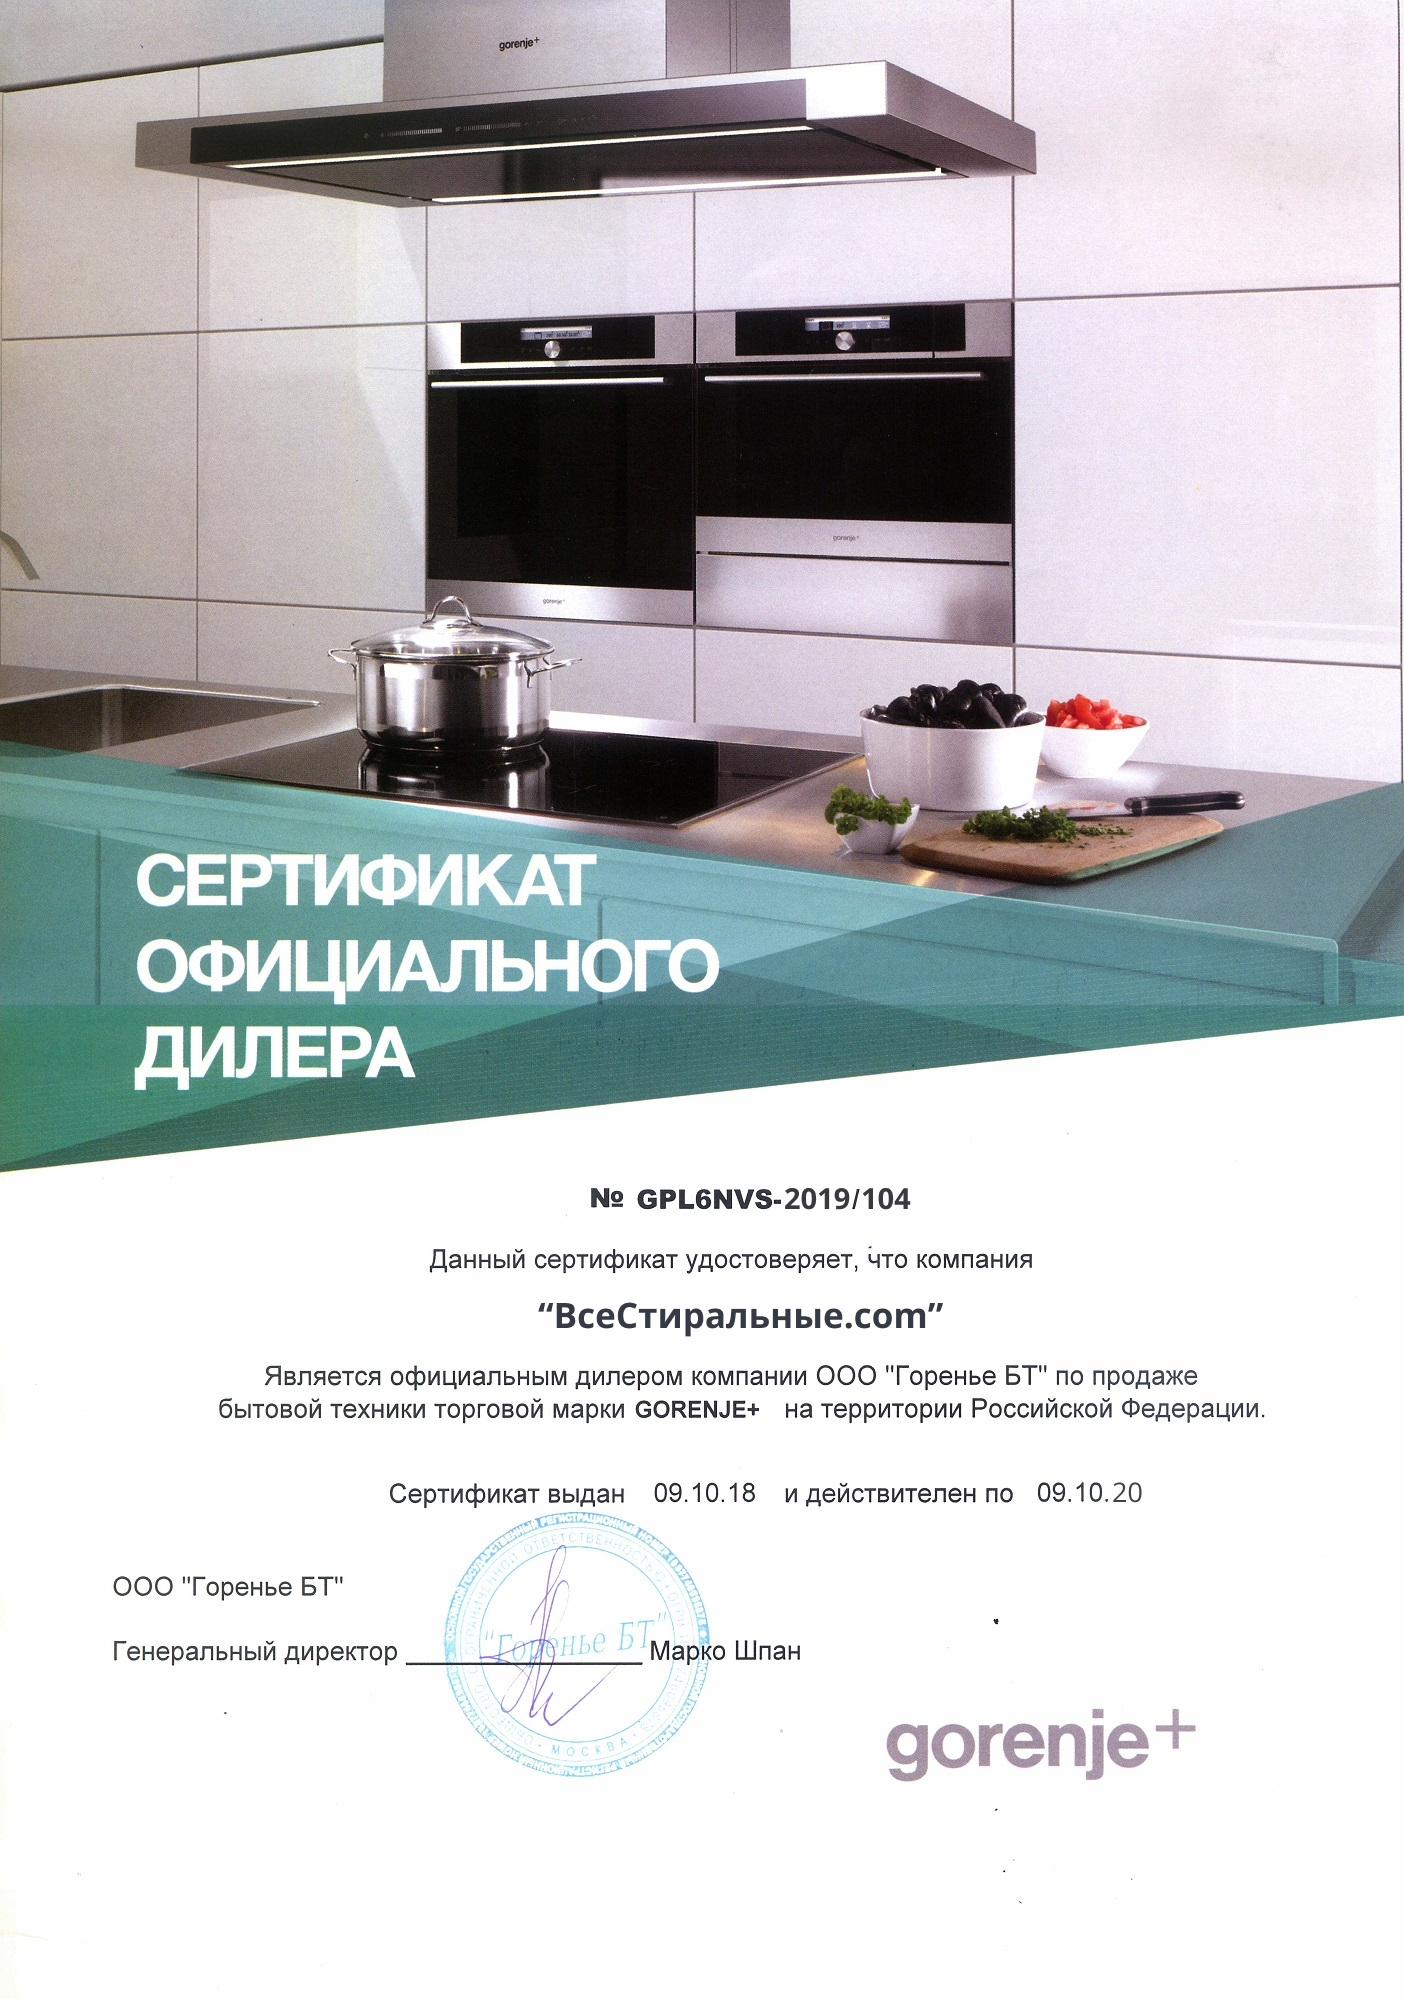 Gloomy Advance sale if Gorenje WE 74 S3 купить в Москве стиральную машину по низкой цене с  доставкой по акции